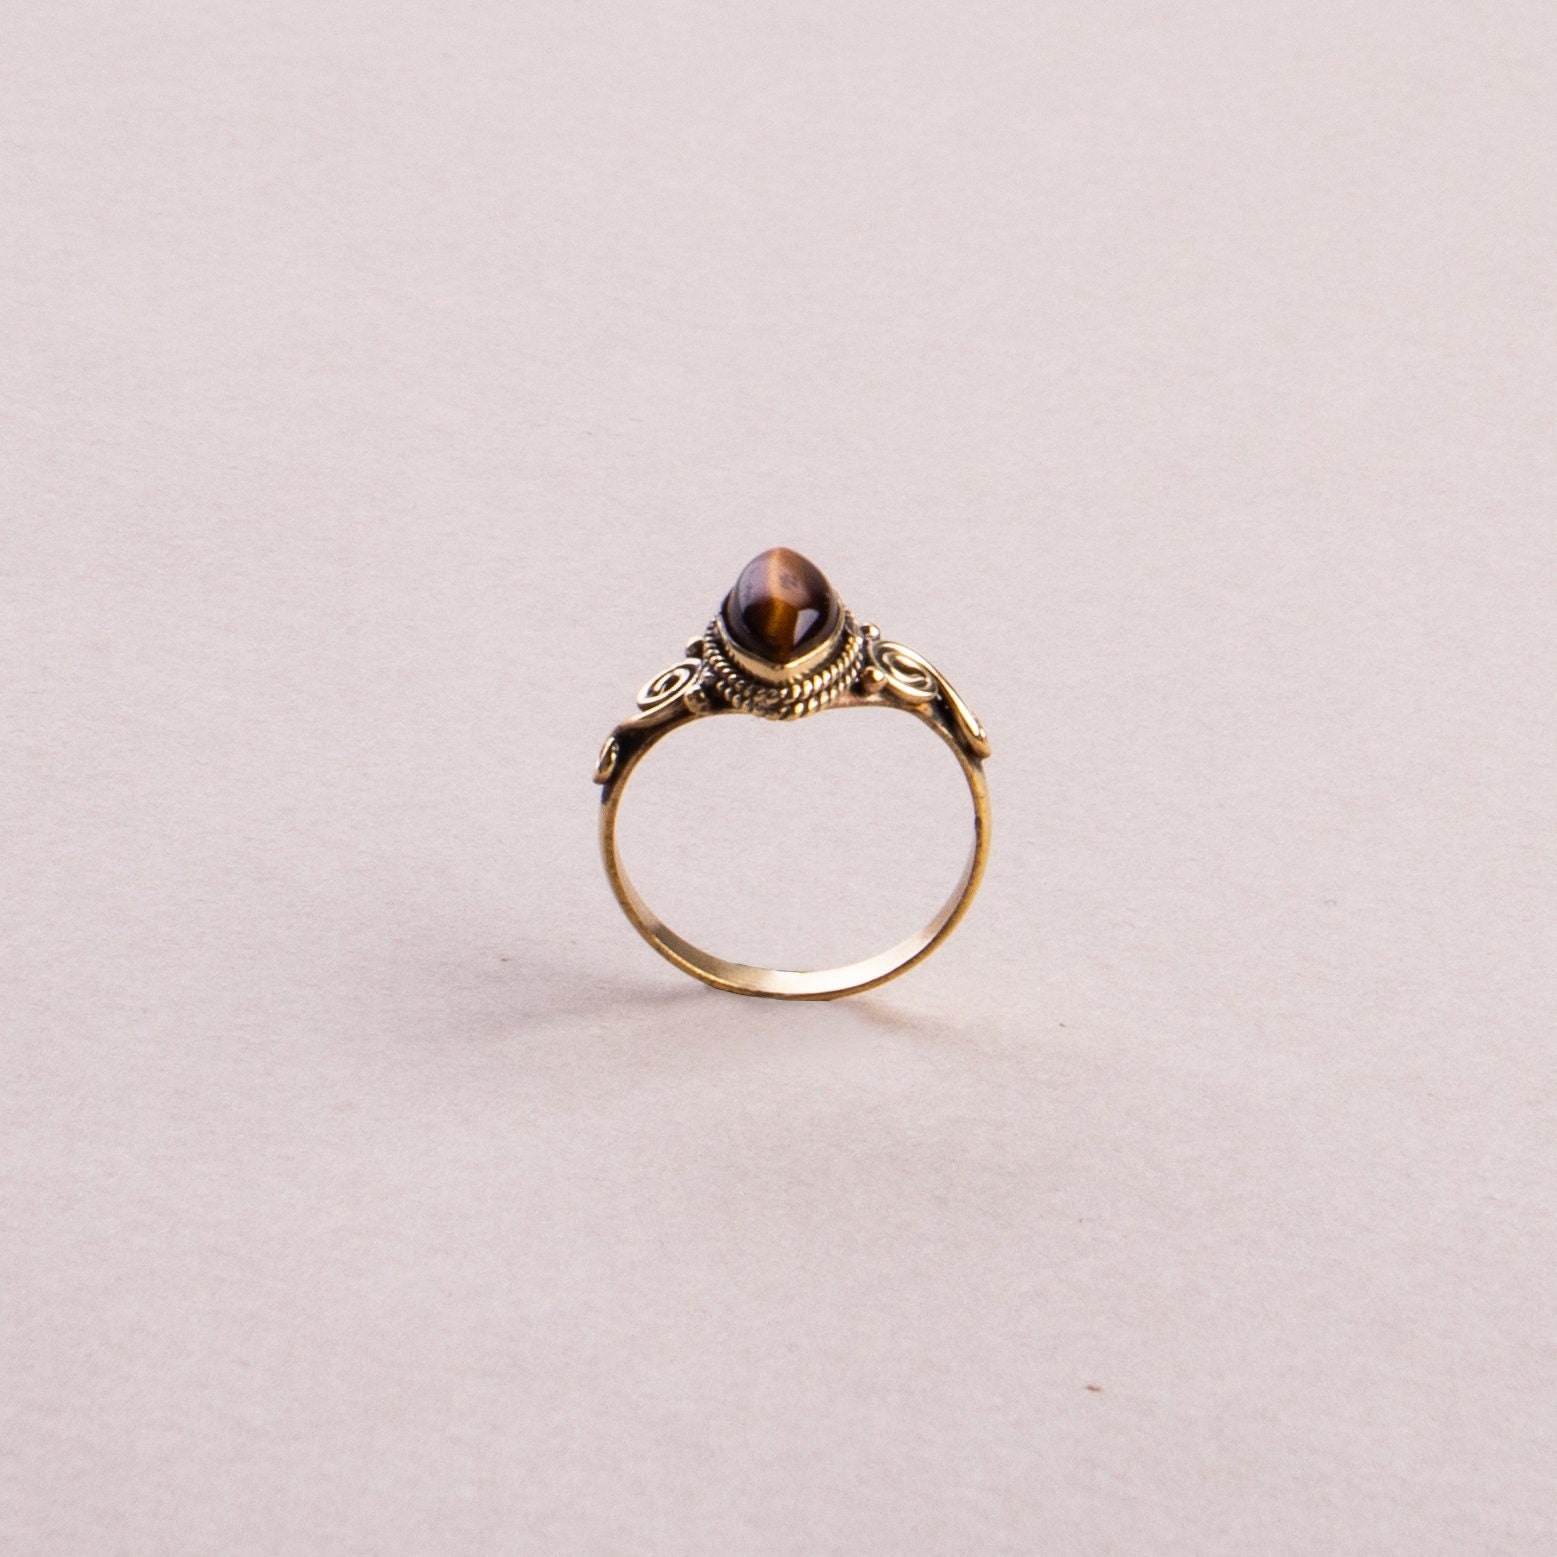 Tigerauge Ring mit ovalem Stein verspielt in gold handgemacht